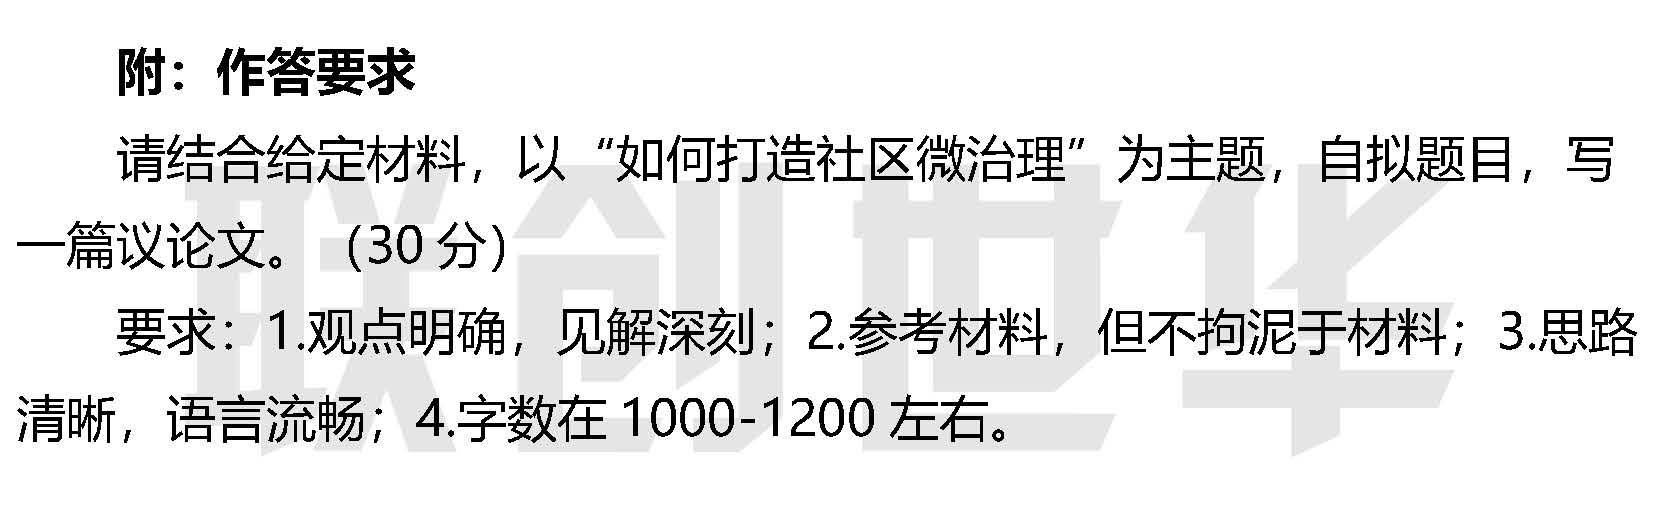 2022年7月16日济南市事业单位笔试真题解读-定稿.jpg